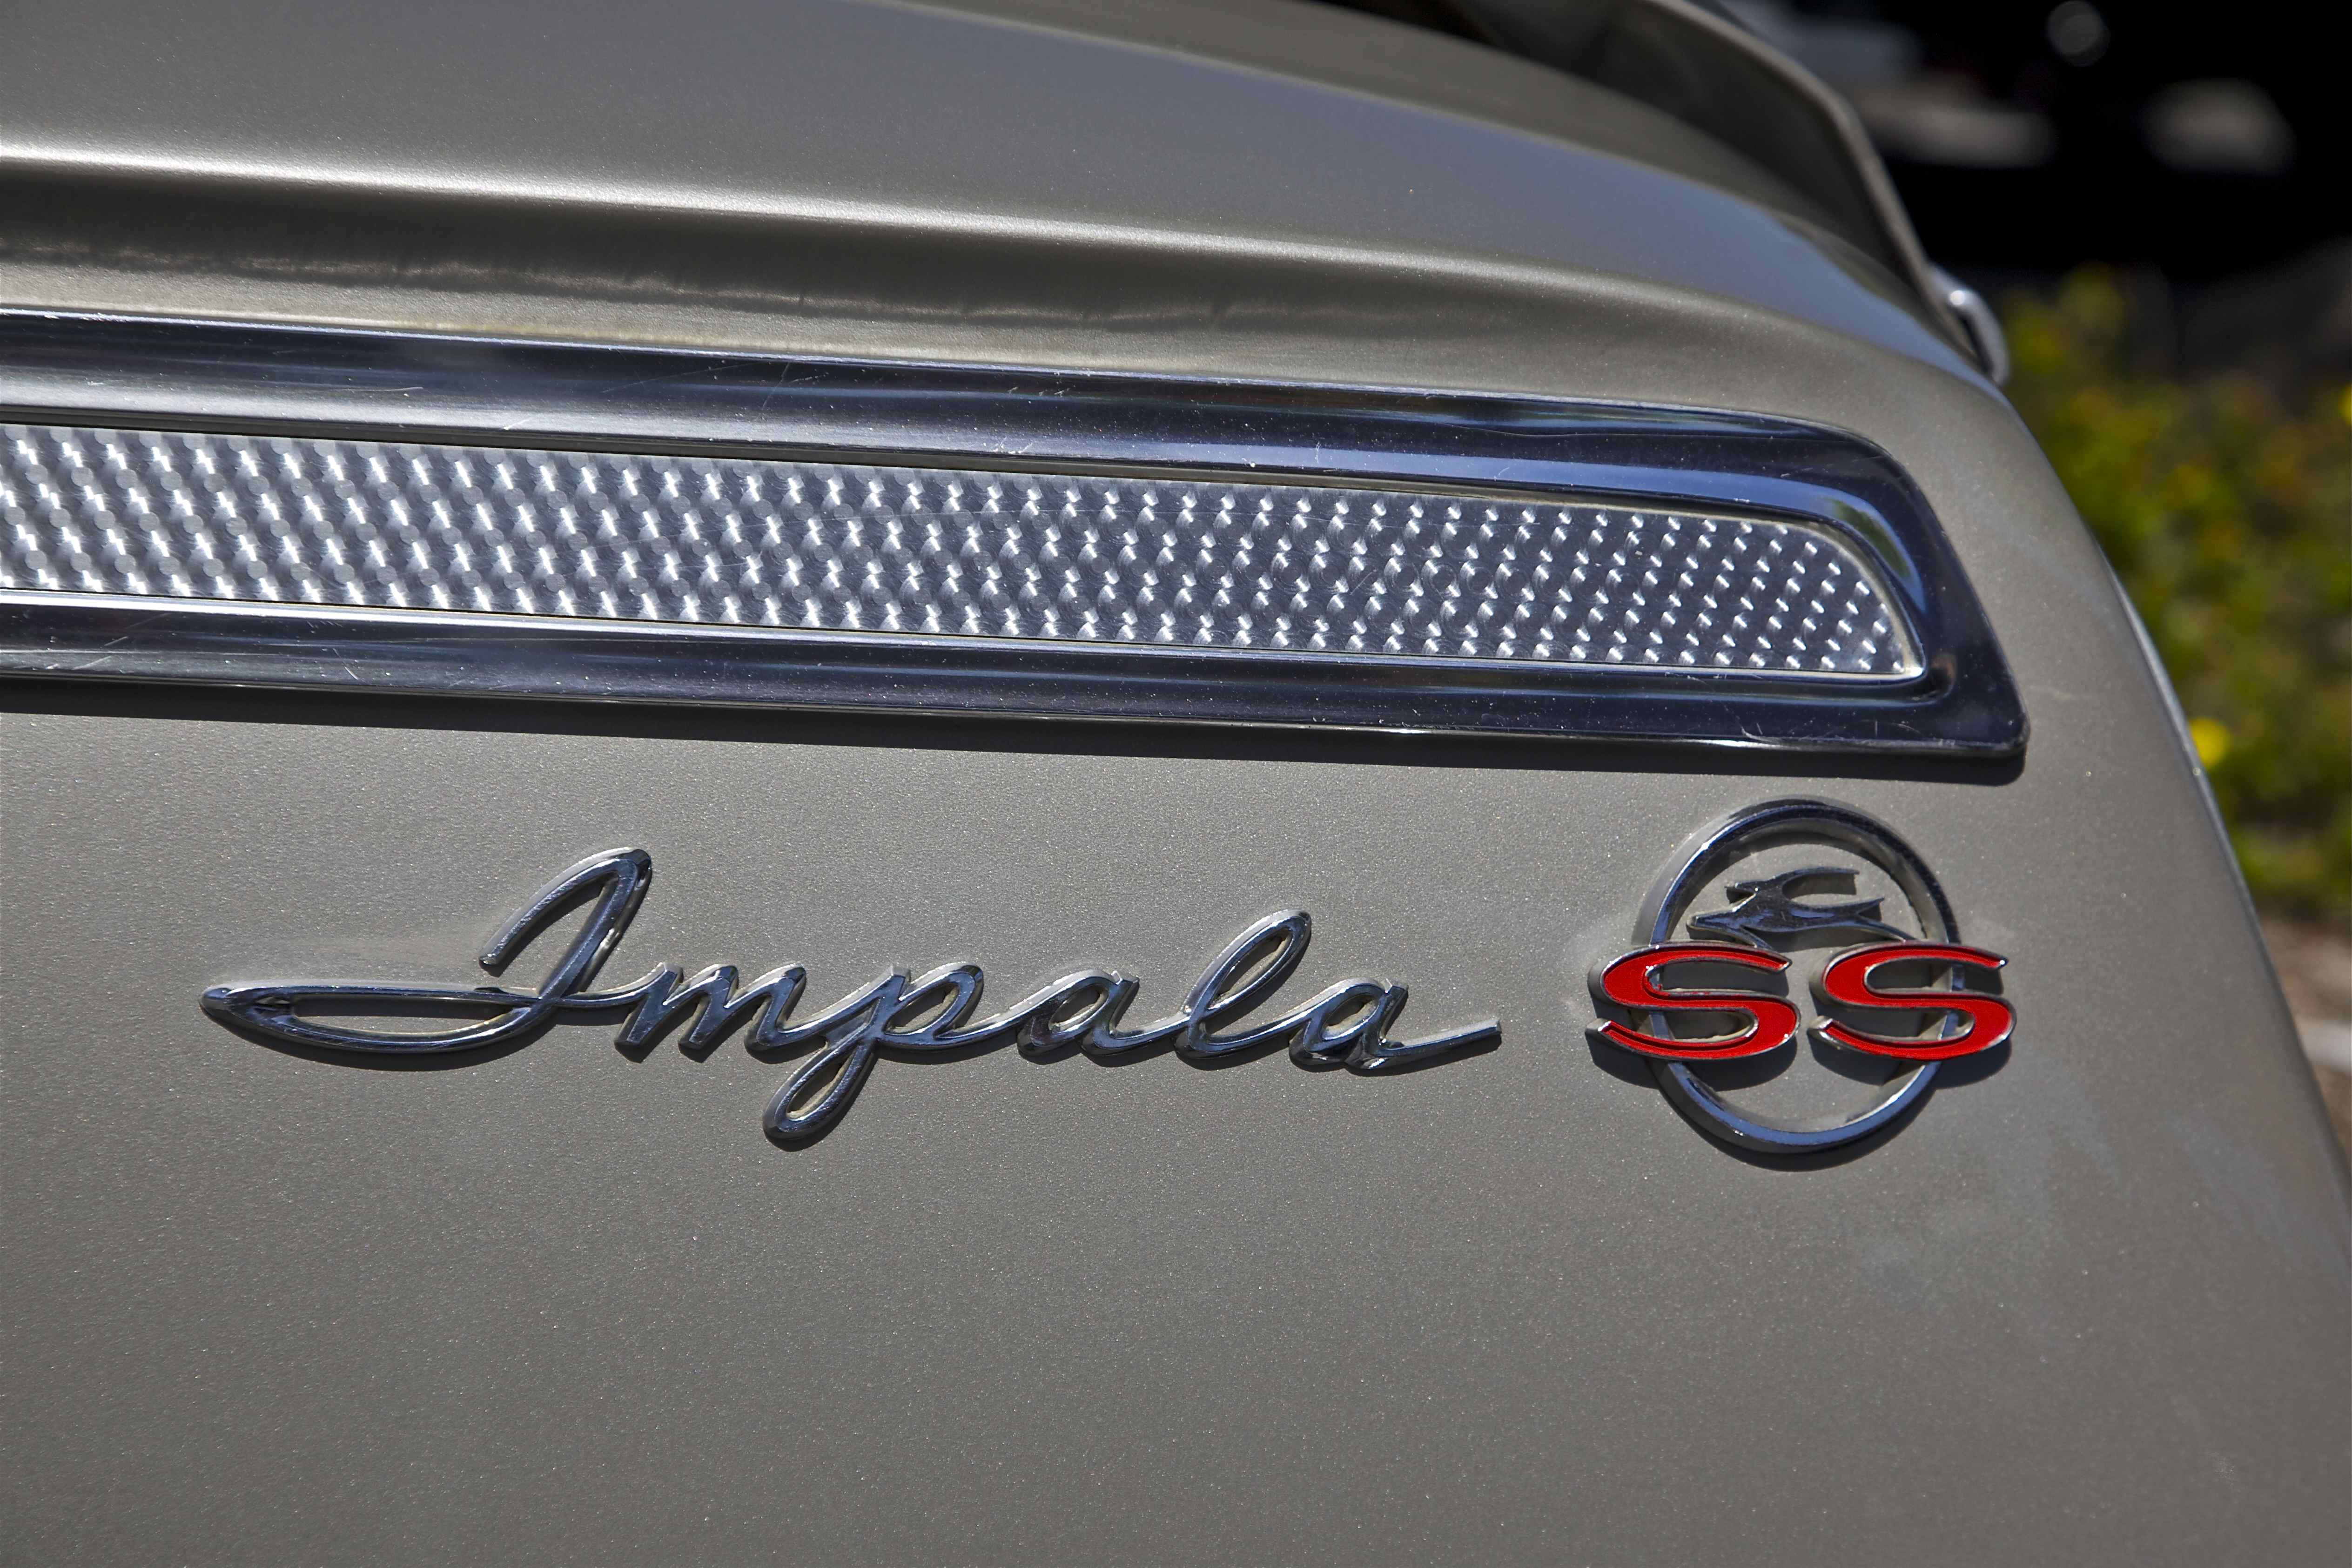 Meilleurs fonds d'écran Chevrolet Impala Ss pour l'écran du téléphone